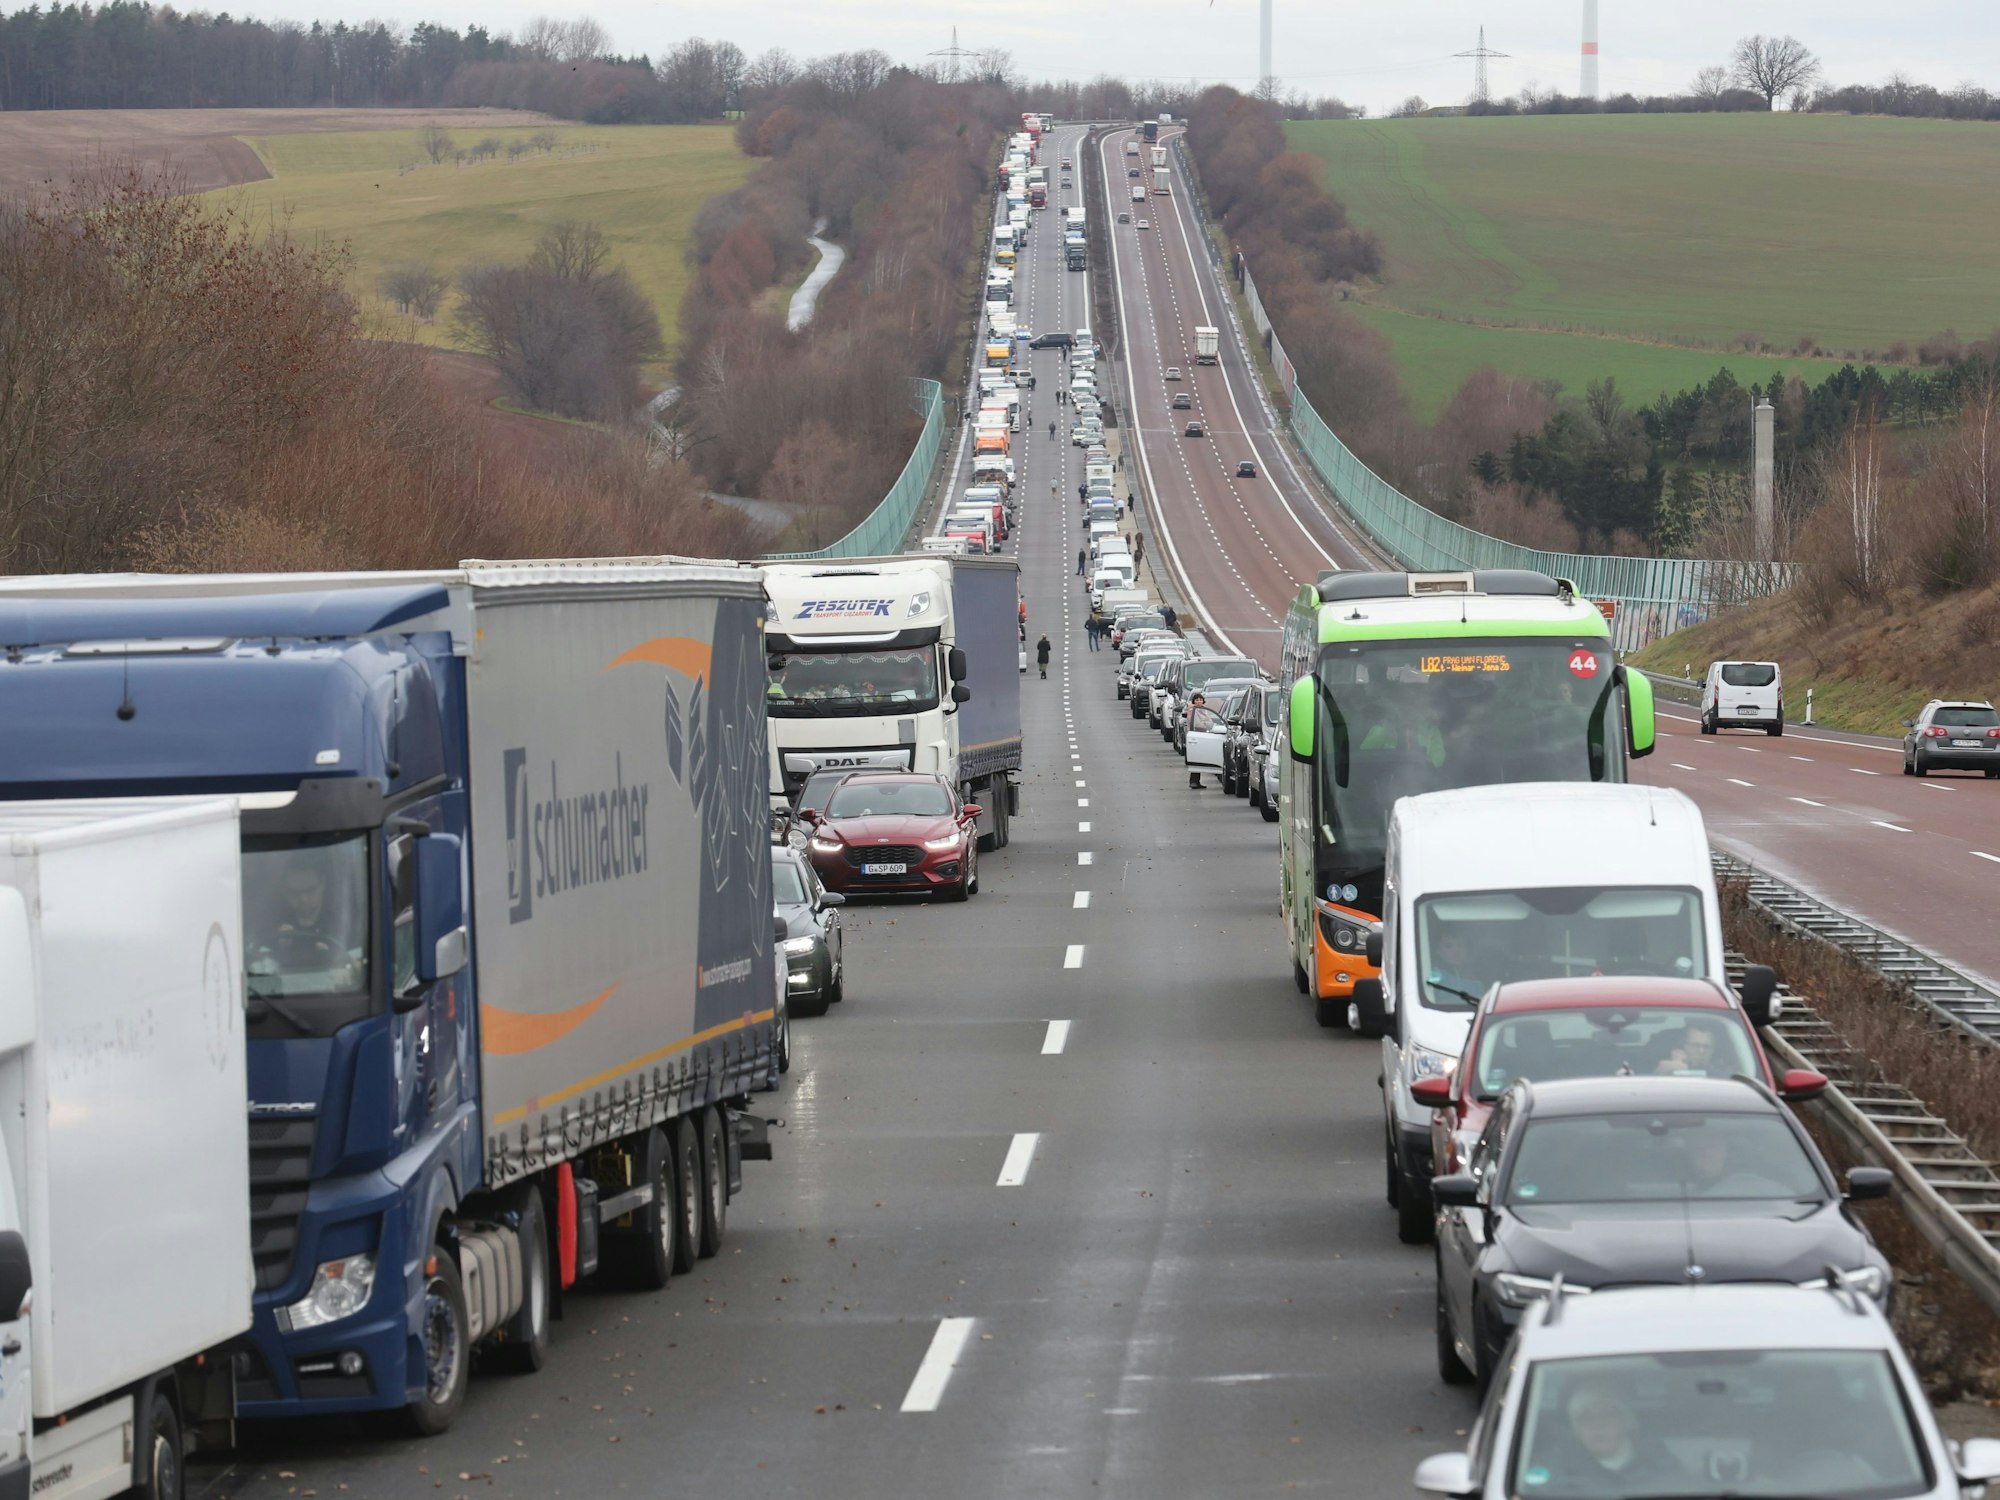 Fahrzeuge haben eine Rettungsgasse gebildet (Symbolbild): Nach einem Unfall auf der A2 bei Recklinghausen sind laut Polizei 40 Fahrer entgegen der Fahrtrichtung durch die Rettungsgasse gefahren, um die Autobahn zu verlassen.